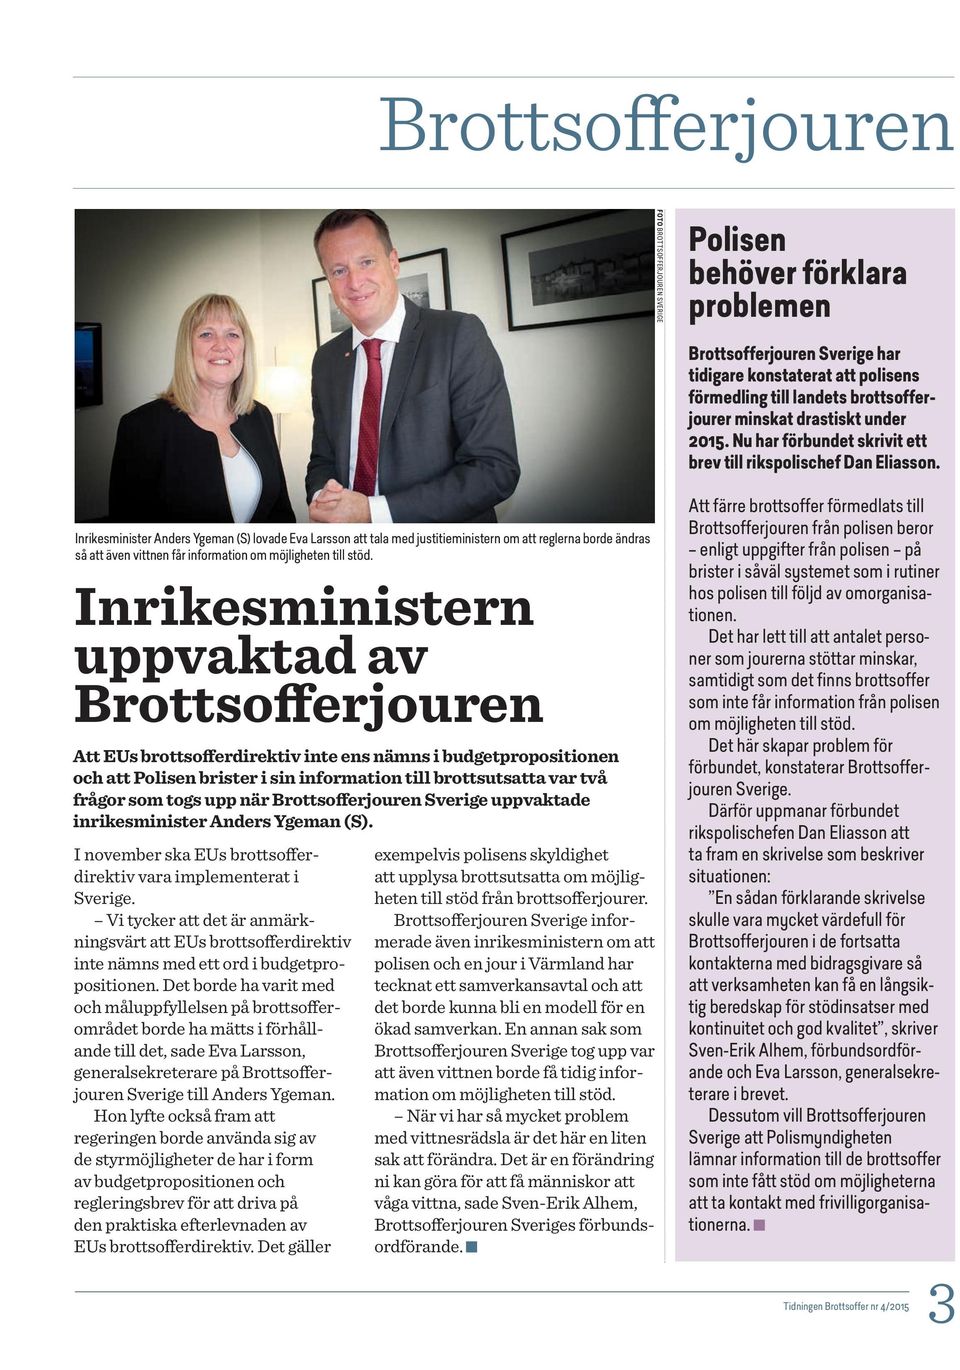 Inrikesminister Anders Ygeman (S) lovade Eva Larsson att tala med justitieministern om att reglerna borde ändras så att även vittnen får information om möjligheten till stöd.